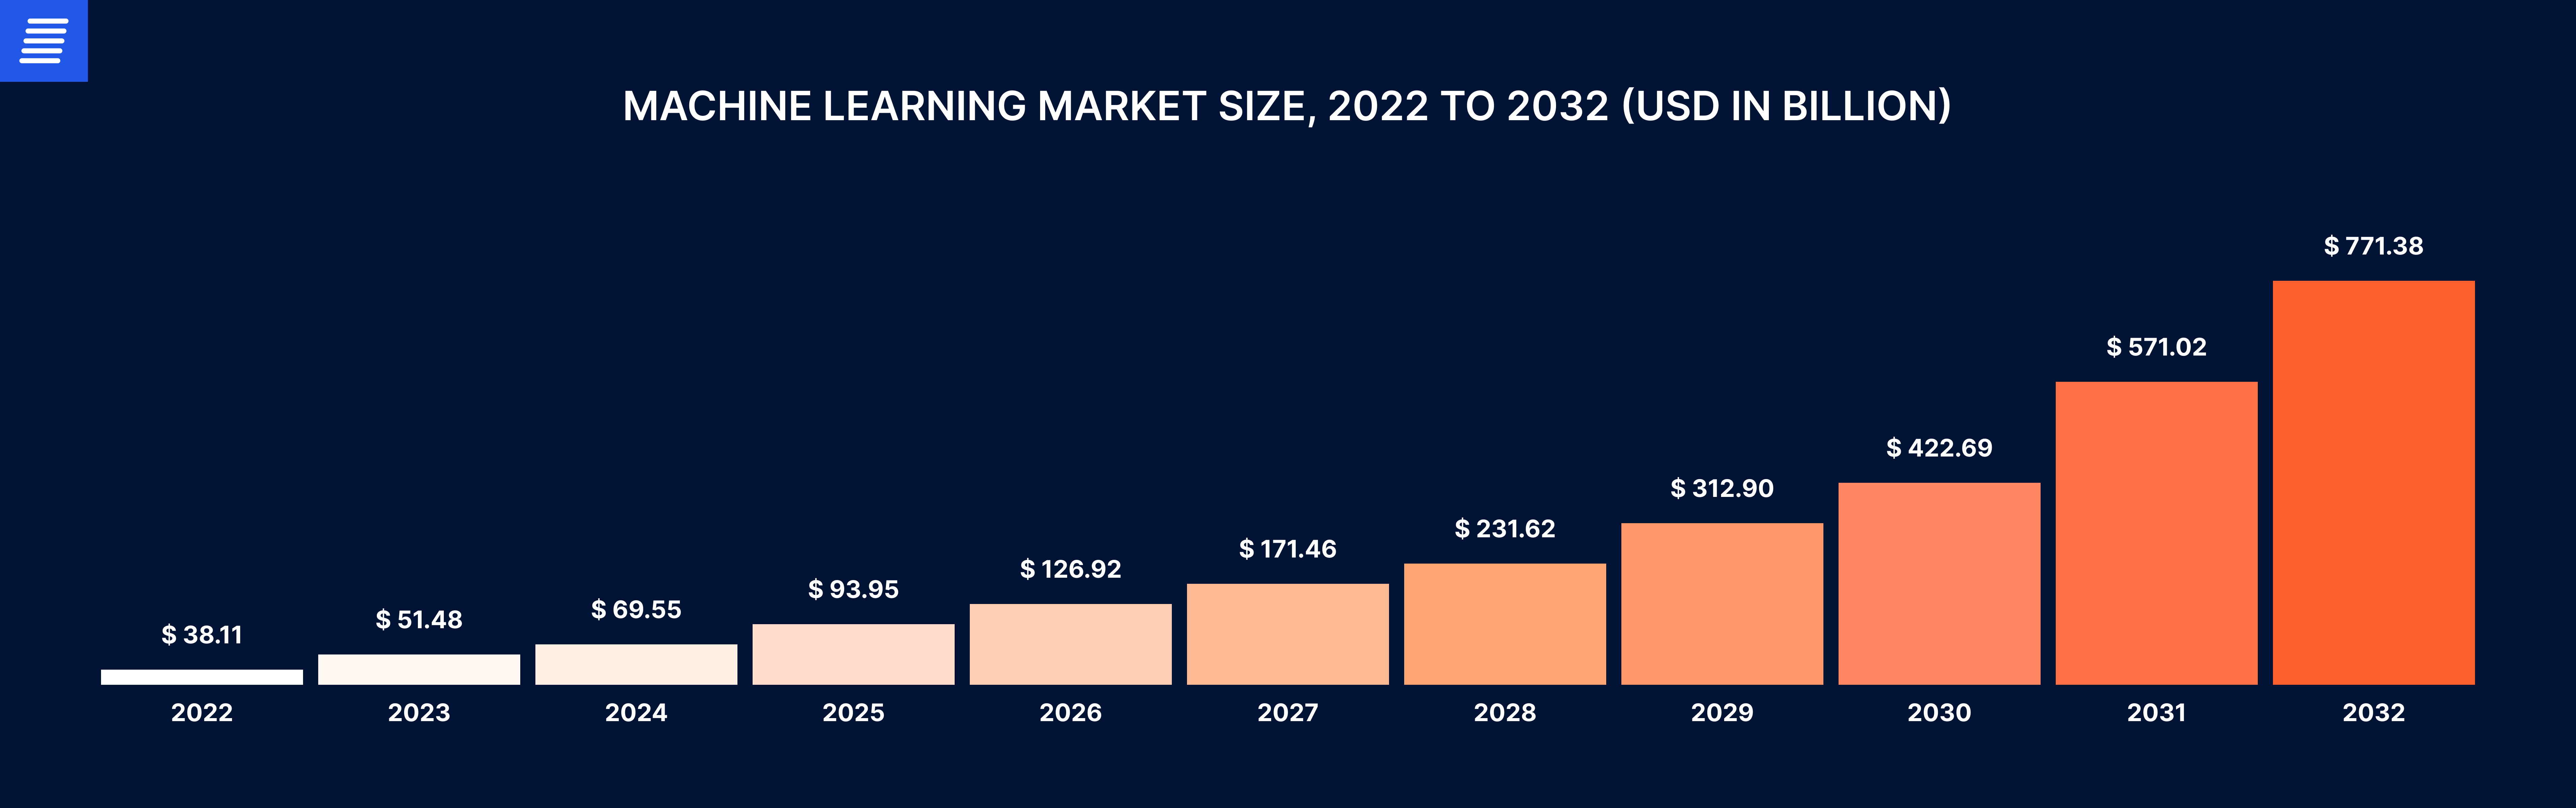 machine learning market size 2022 - 2032